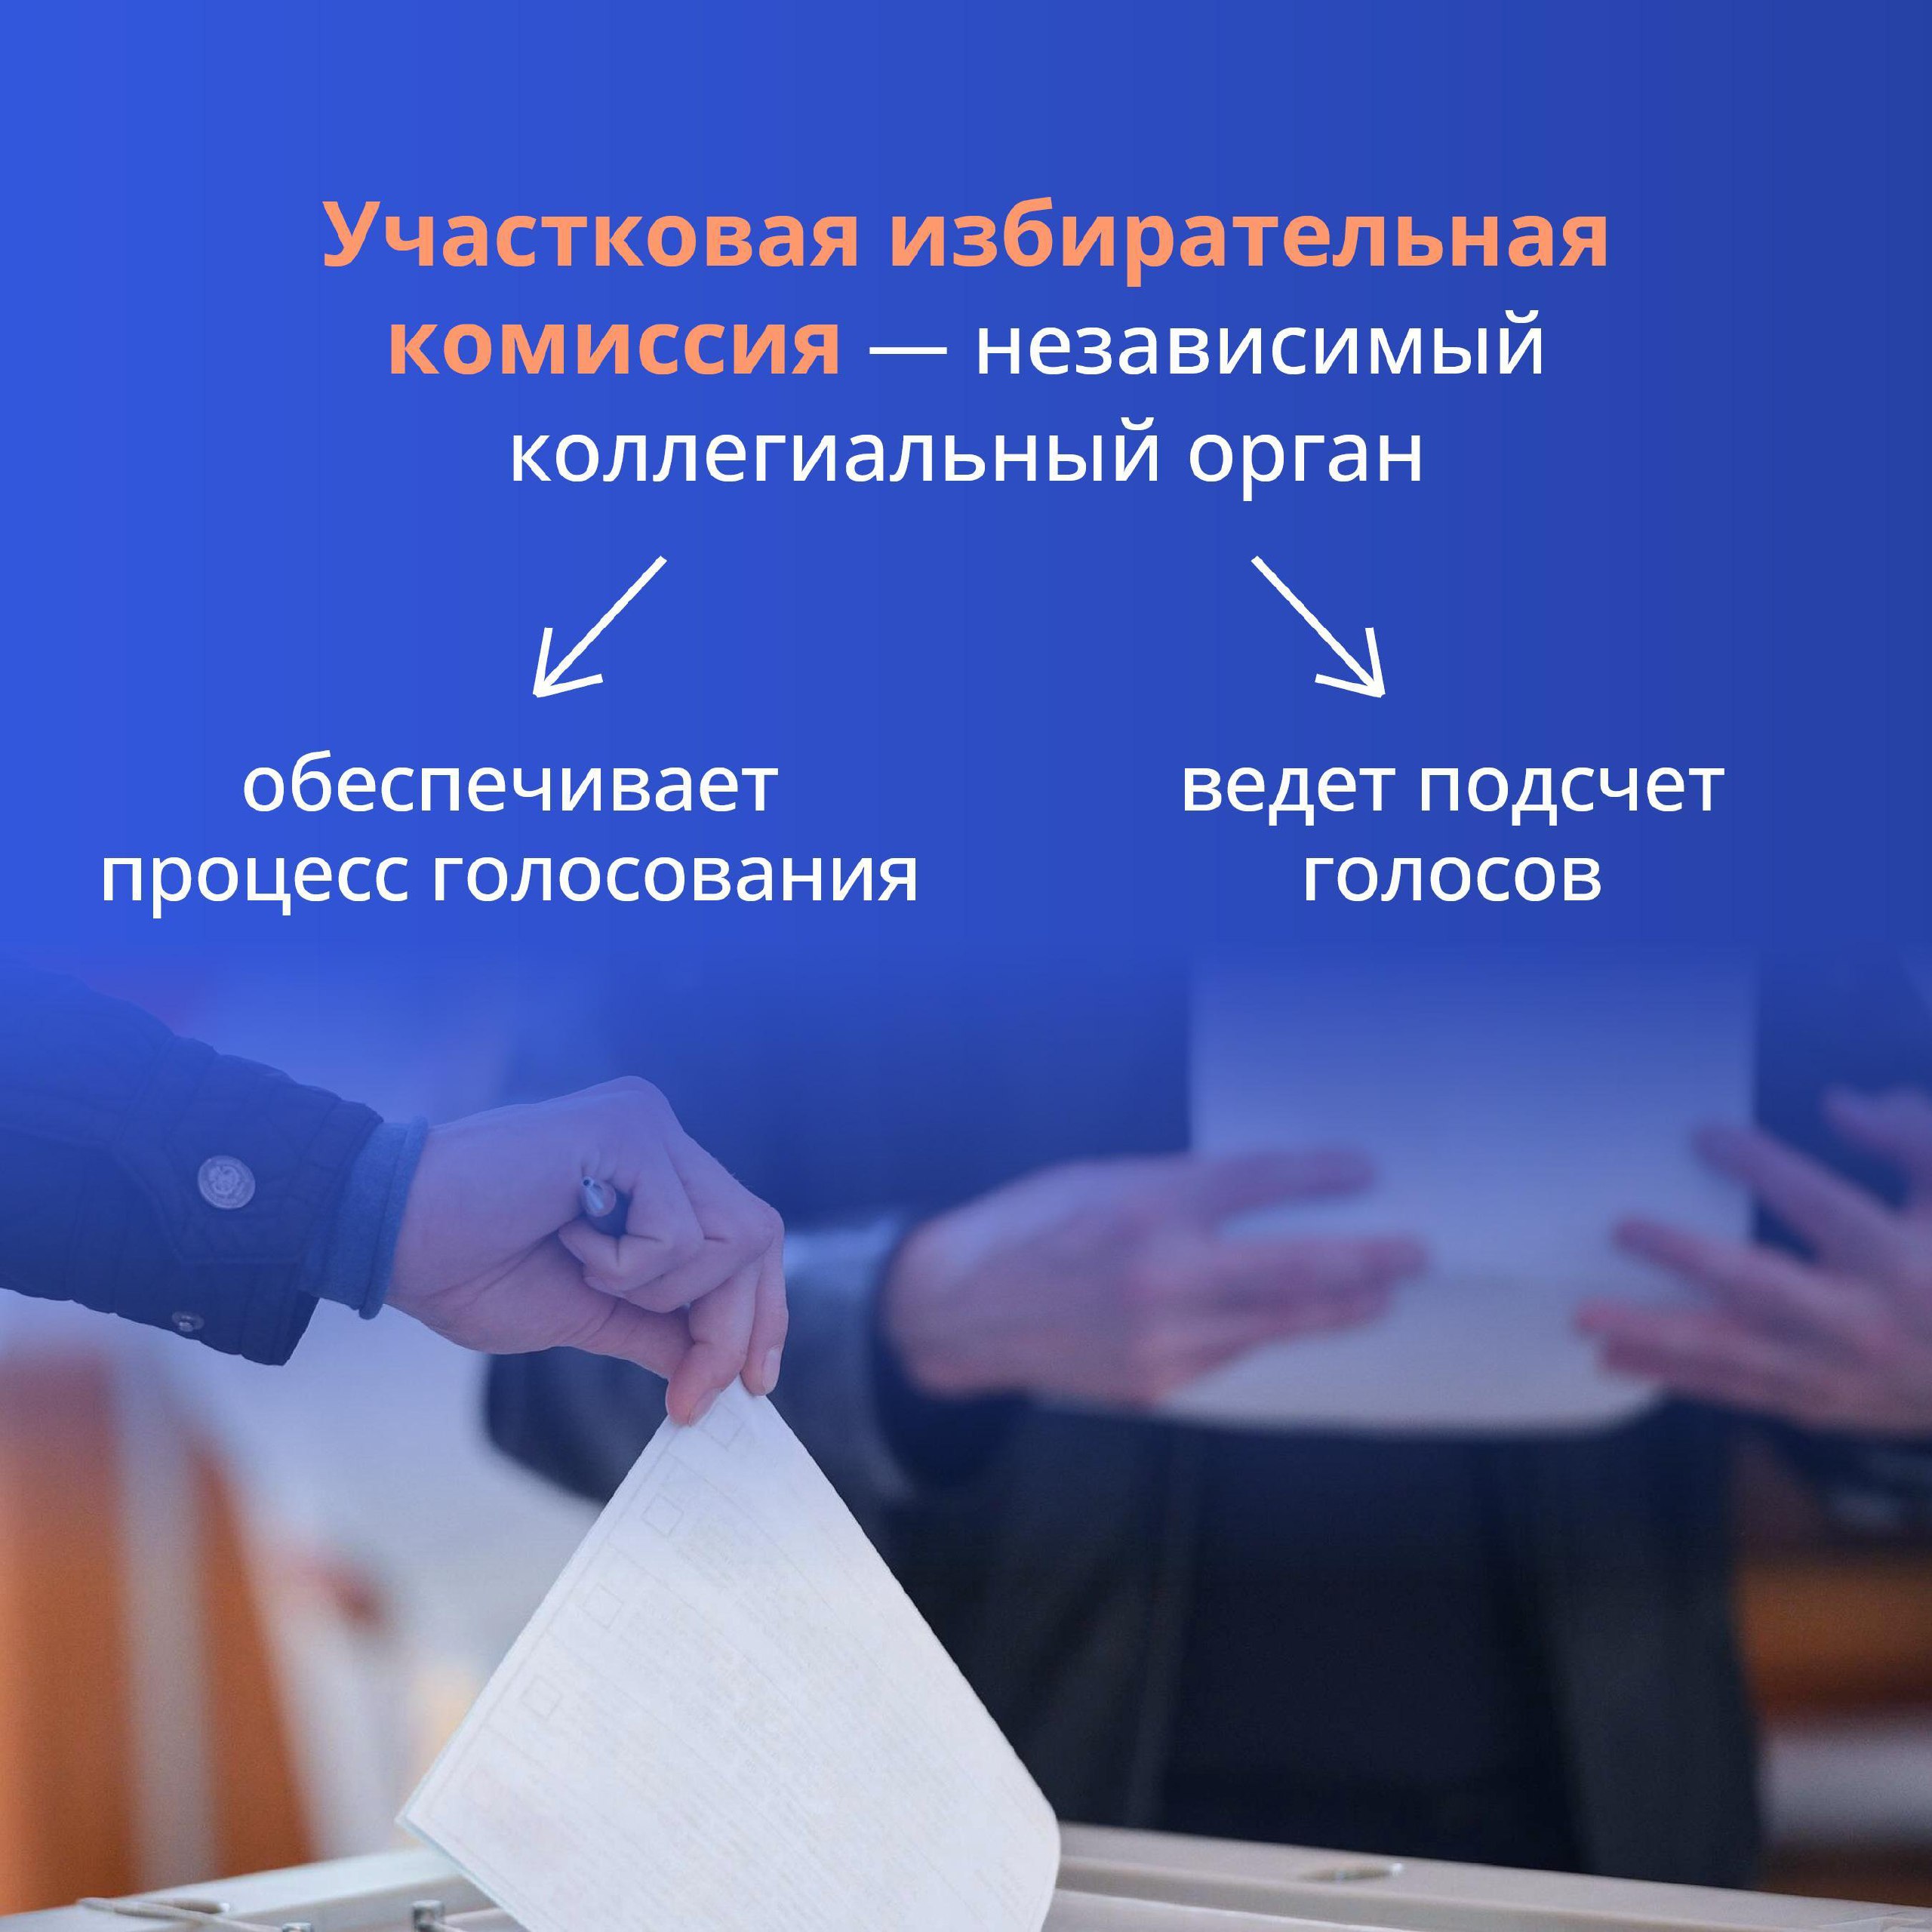 В сентябре этого года Приморский край выбирает губернатора — дело важное и нужное!.